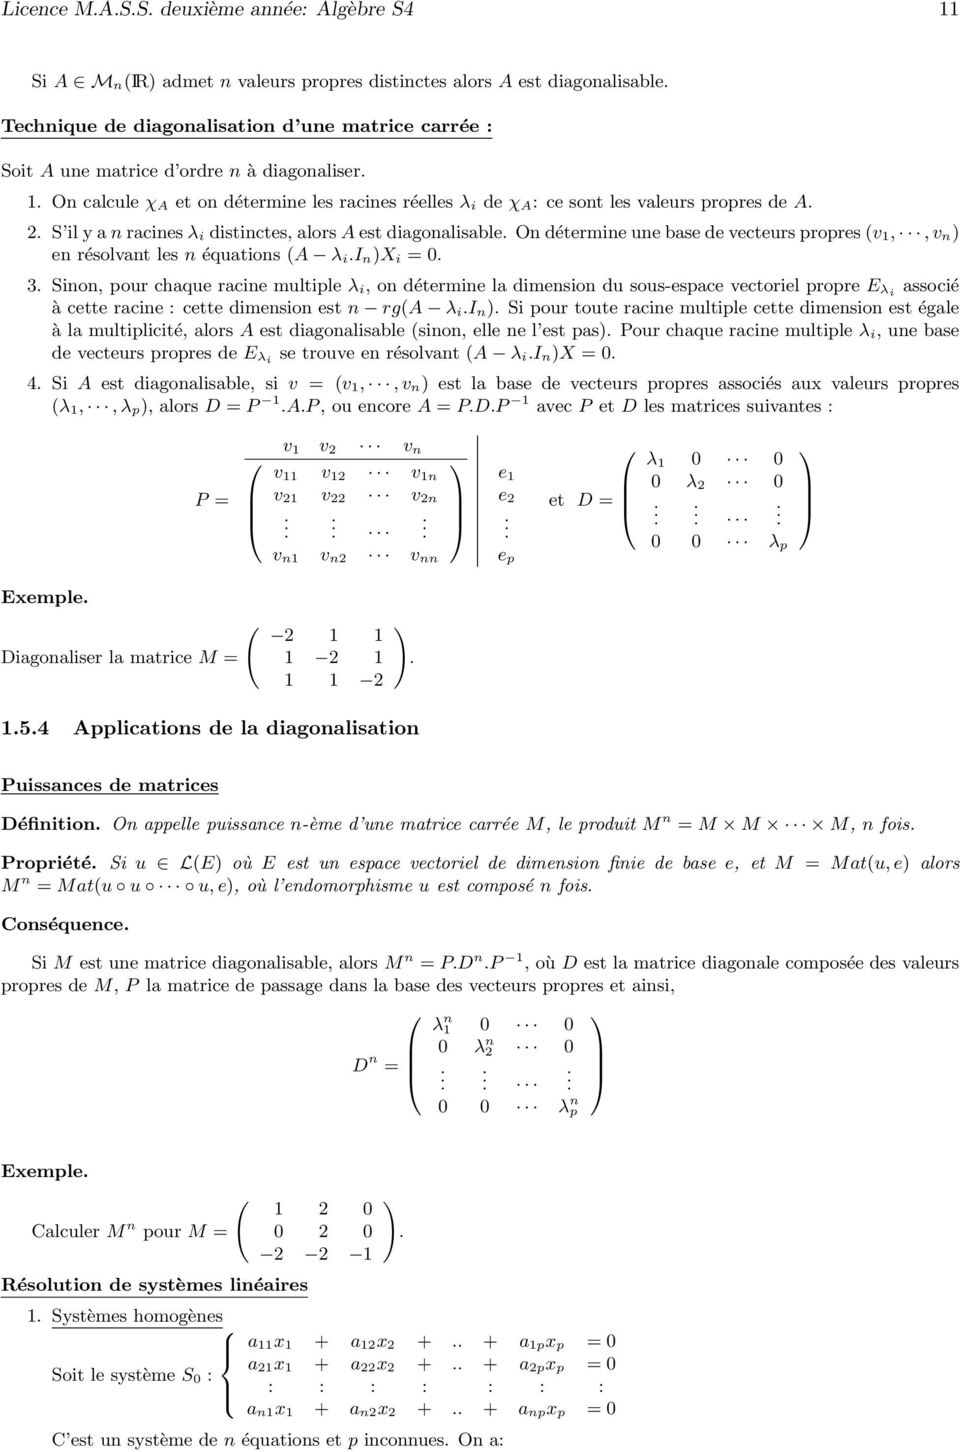 Ondétermineunebasedevecteurspropres(v 1,,v n en résolvant les n équations (A λ ii nx i = 0 3 Sinon, pour chaque racine multiple λ i, on détermine la dimension du sous-espace vectoriel propre E λi